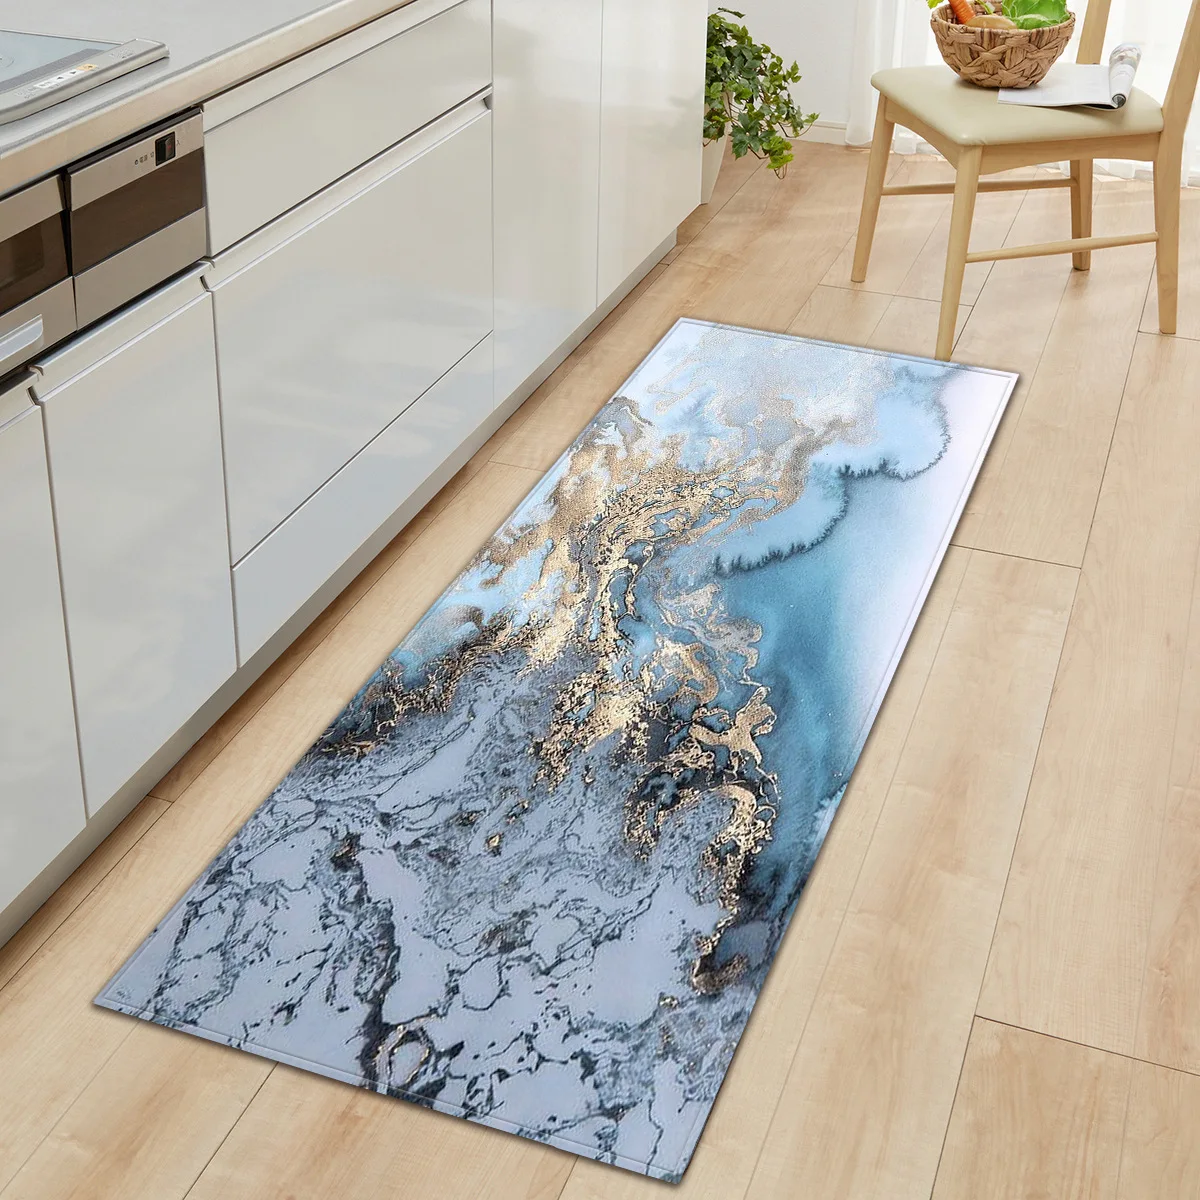 3D Marbling Non-slip Area Rugs Carpet Kitchen Rug Living Room Floor Mats Decor 